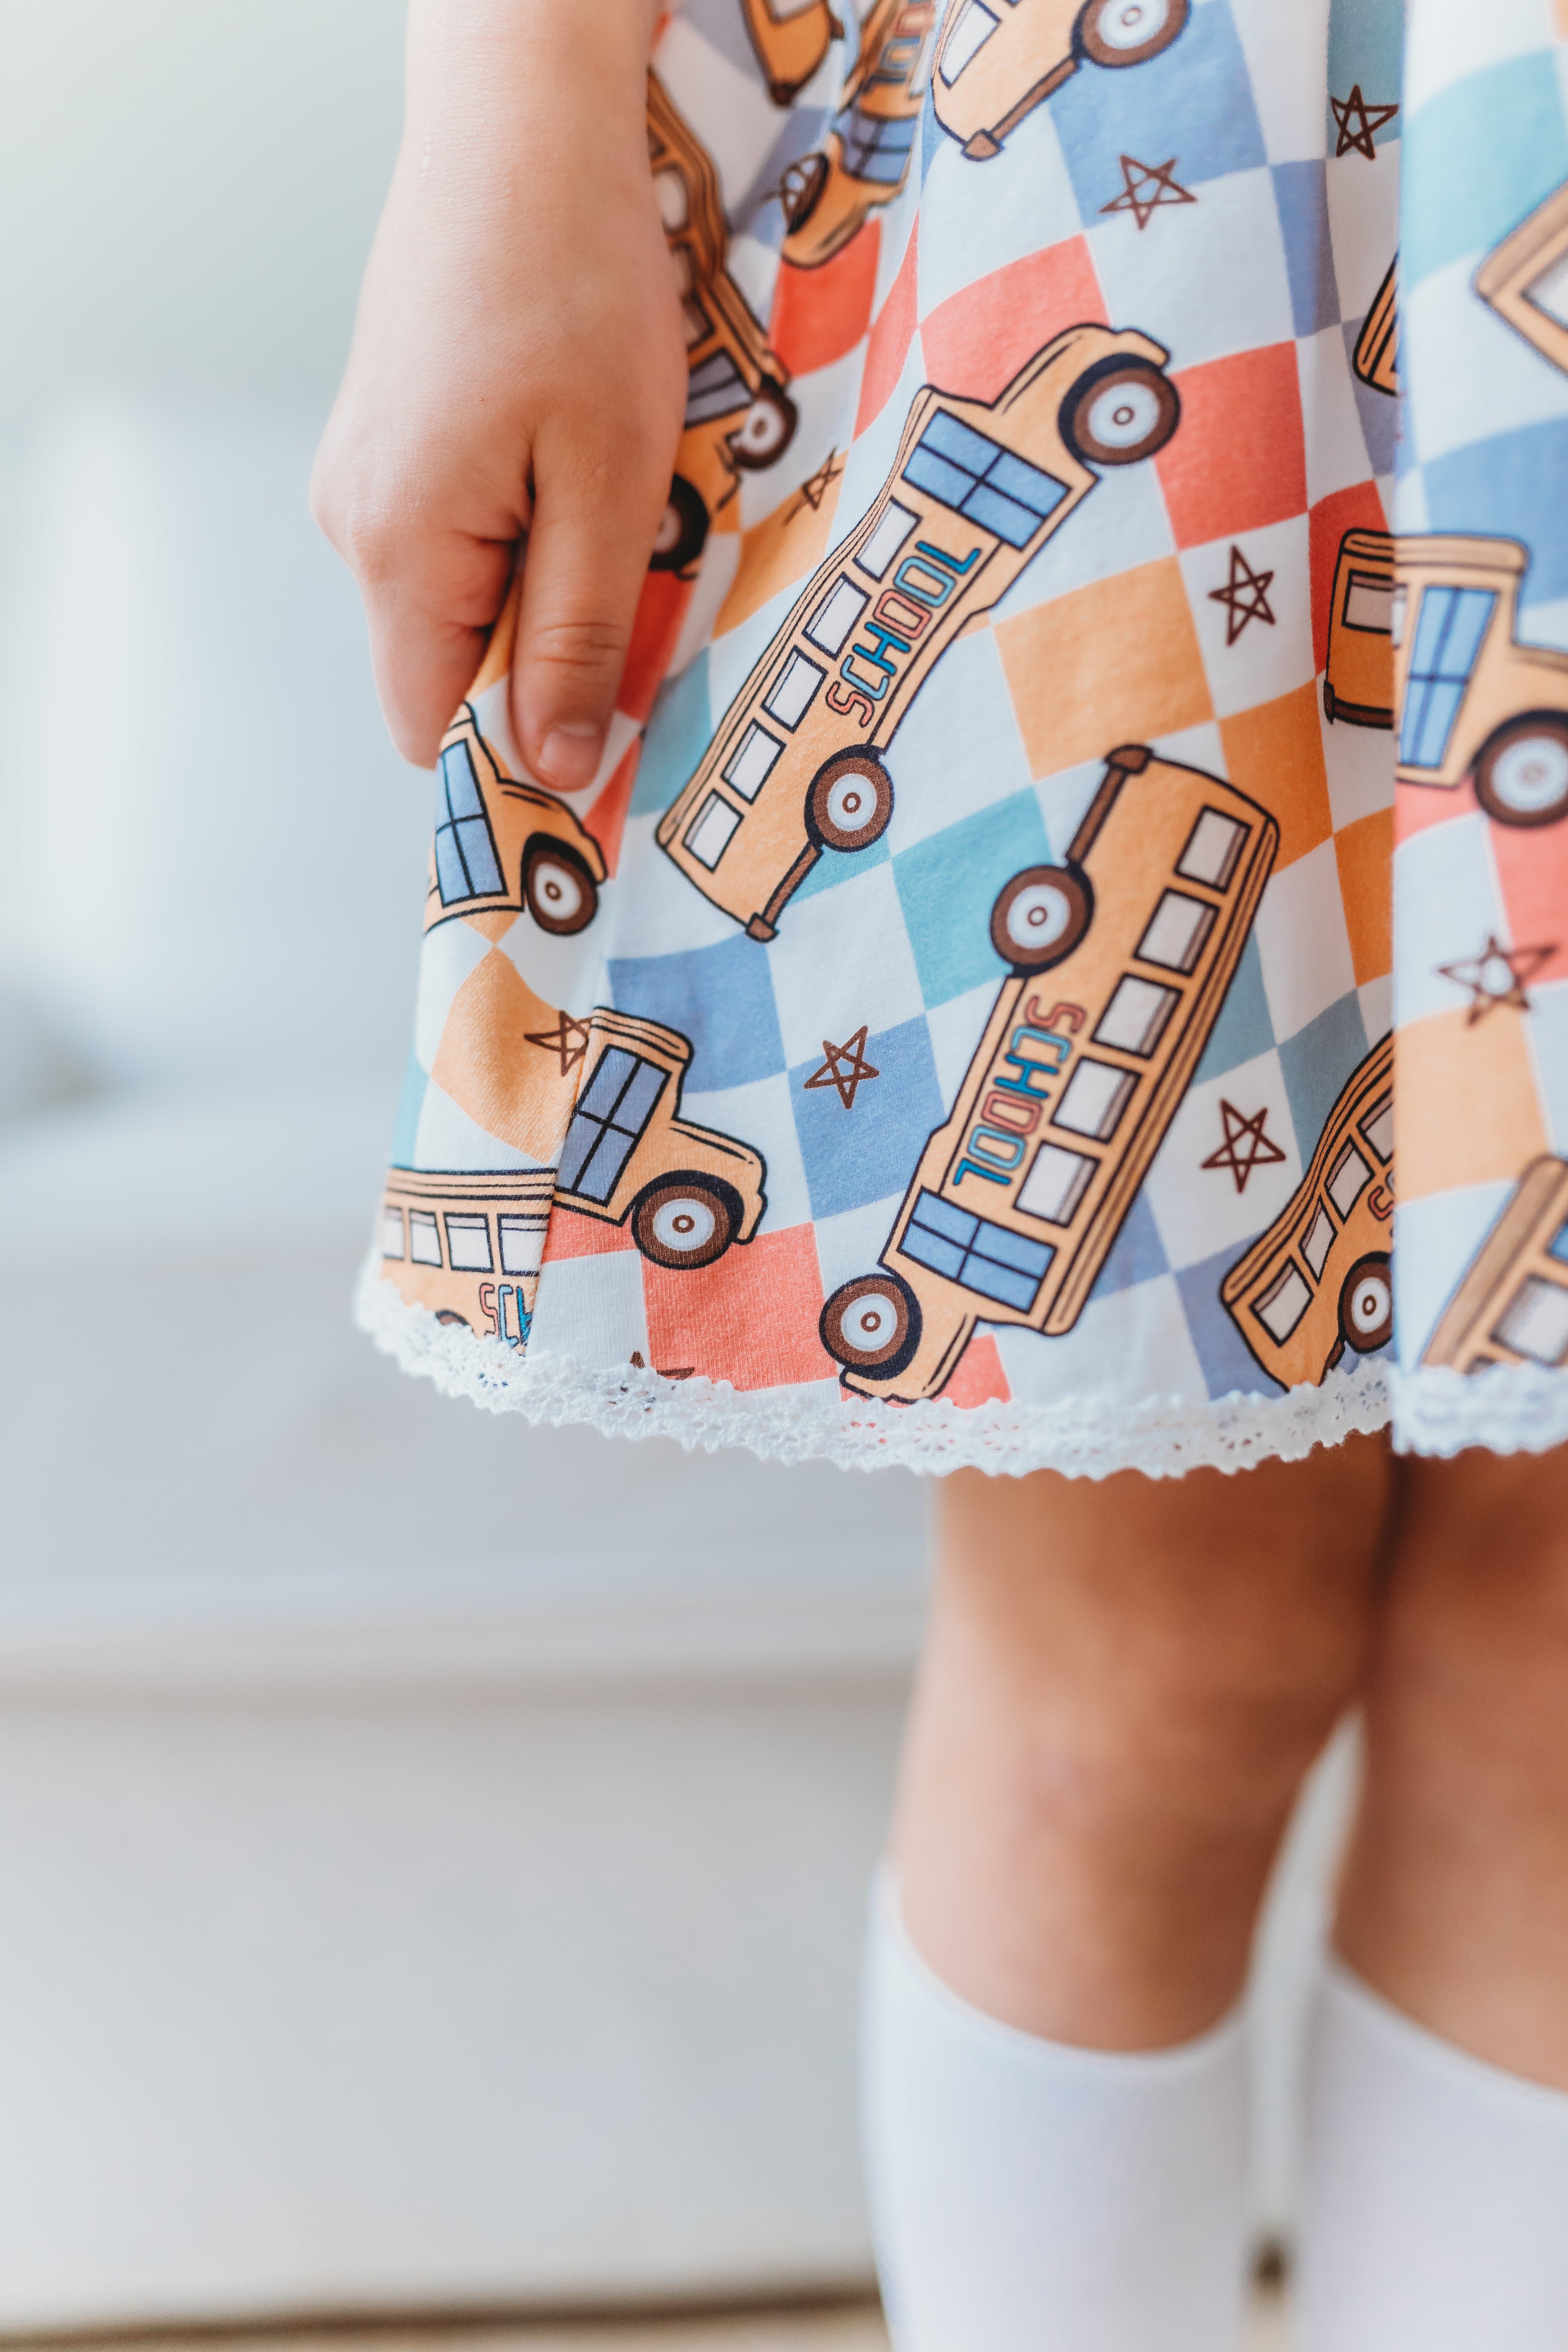 Penelope Knit Dress - Groovy Bus Ride (Pre-Order)